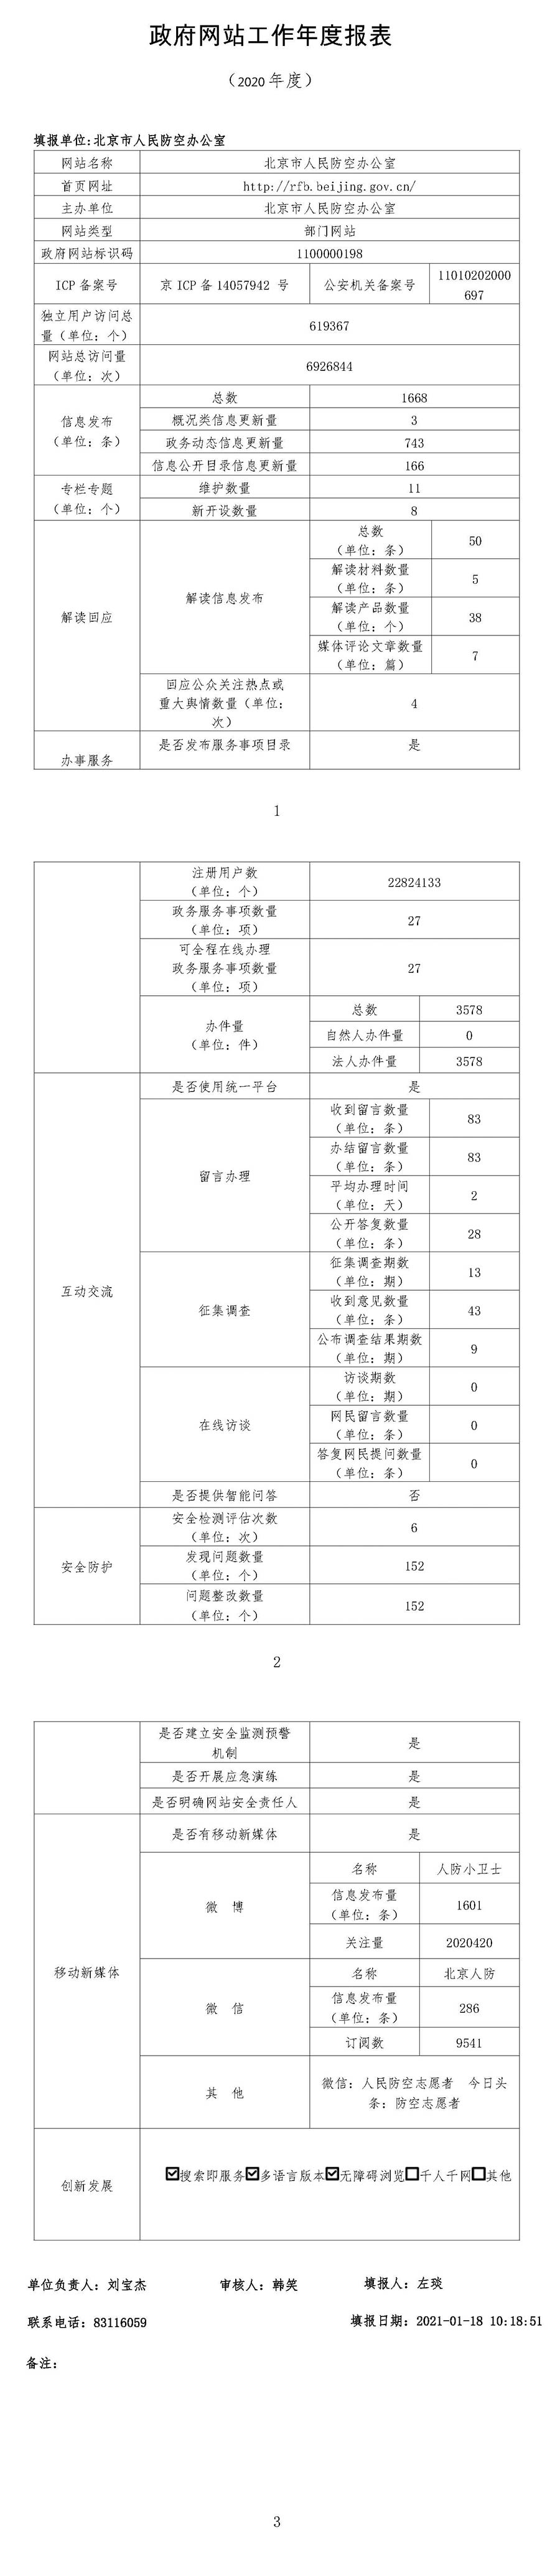 2020年北京市人民防空办公室网站工作年度报表.jpg